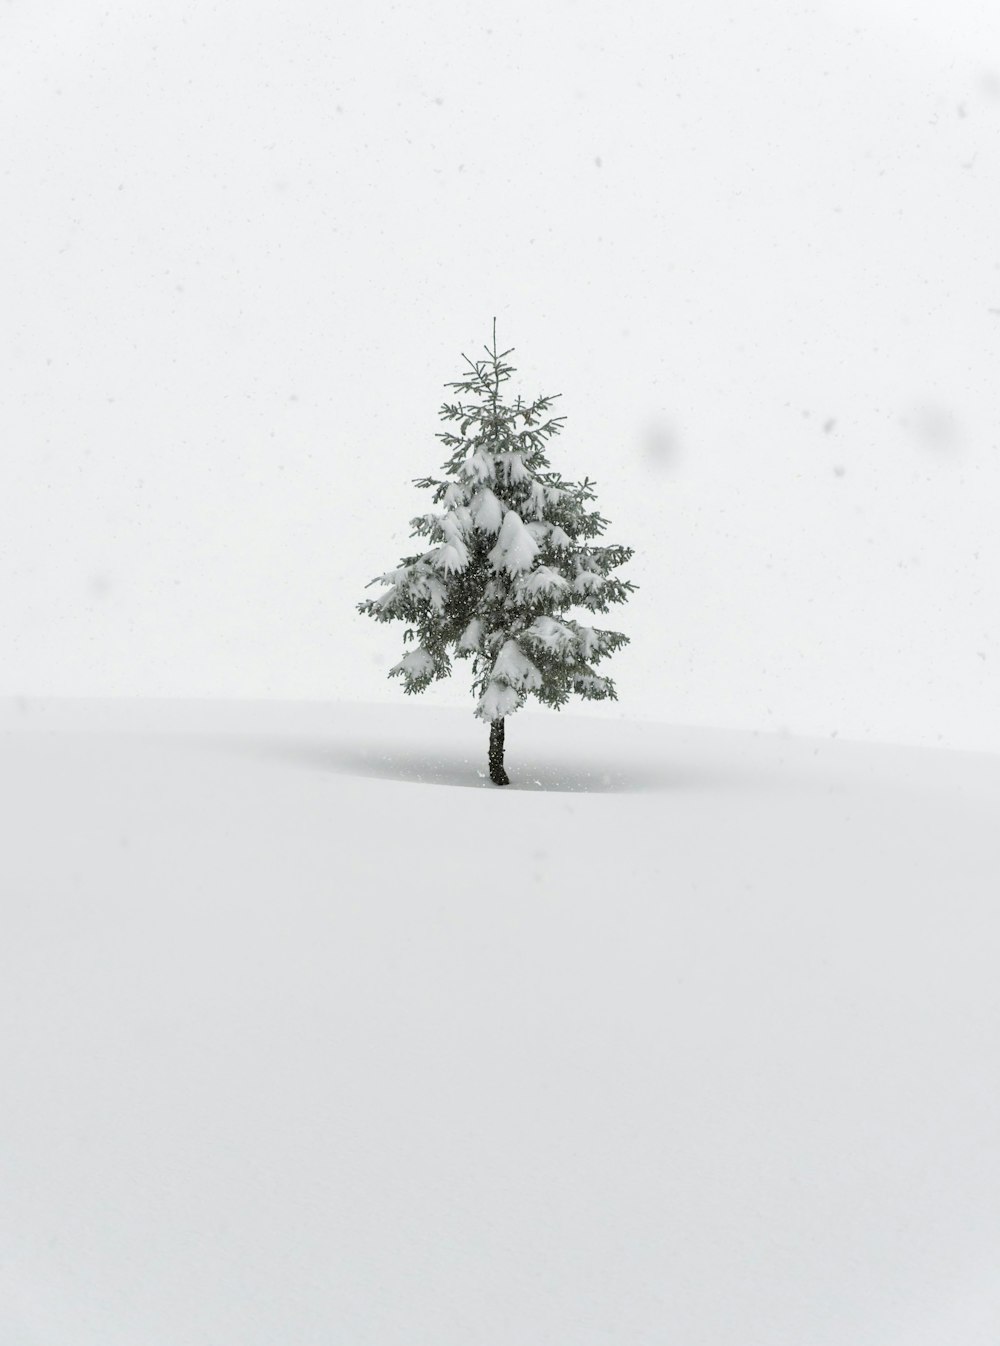 a lone pine tree in a snowy field